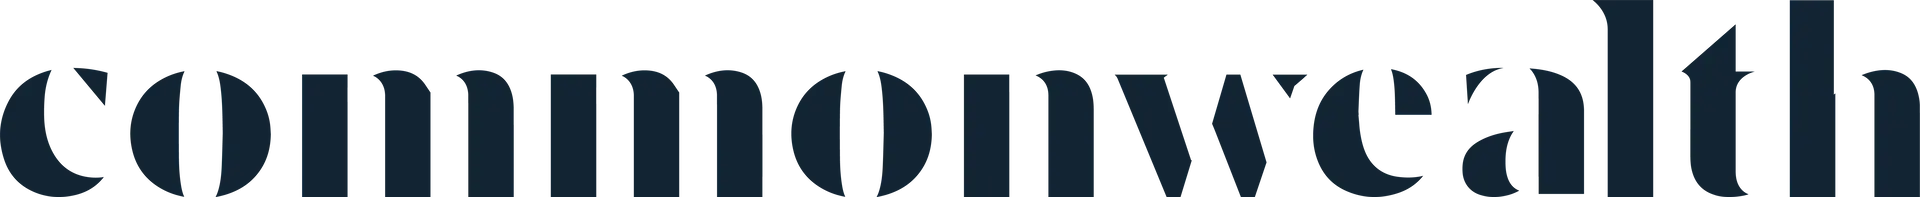 commonwealth-logo